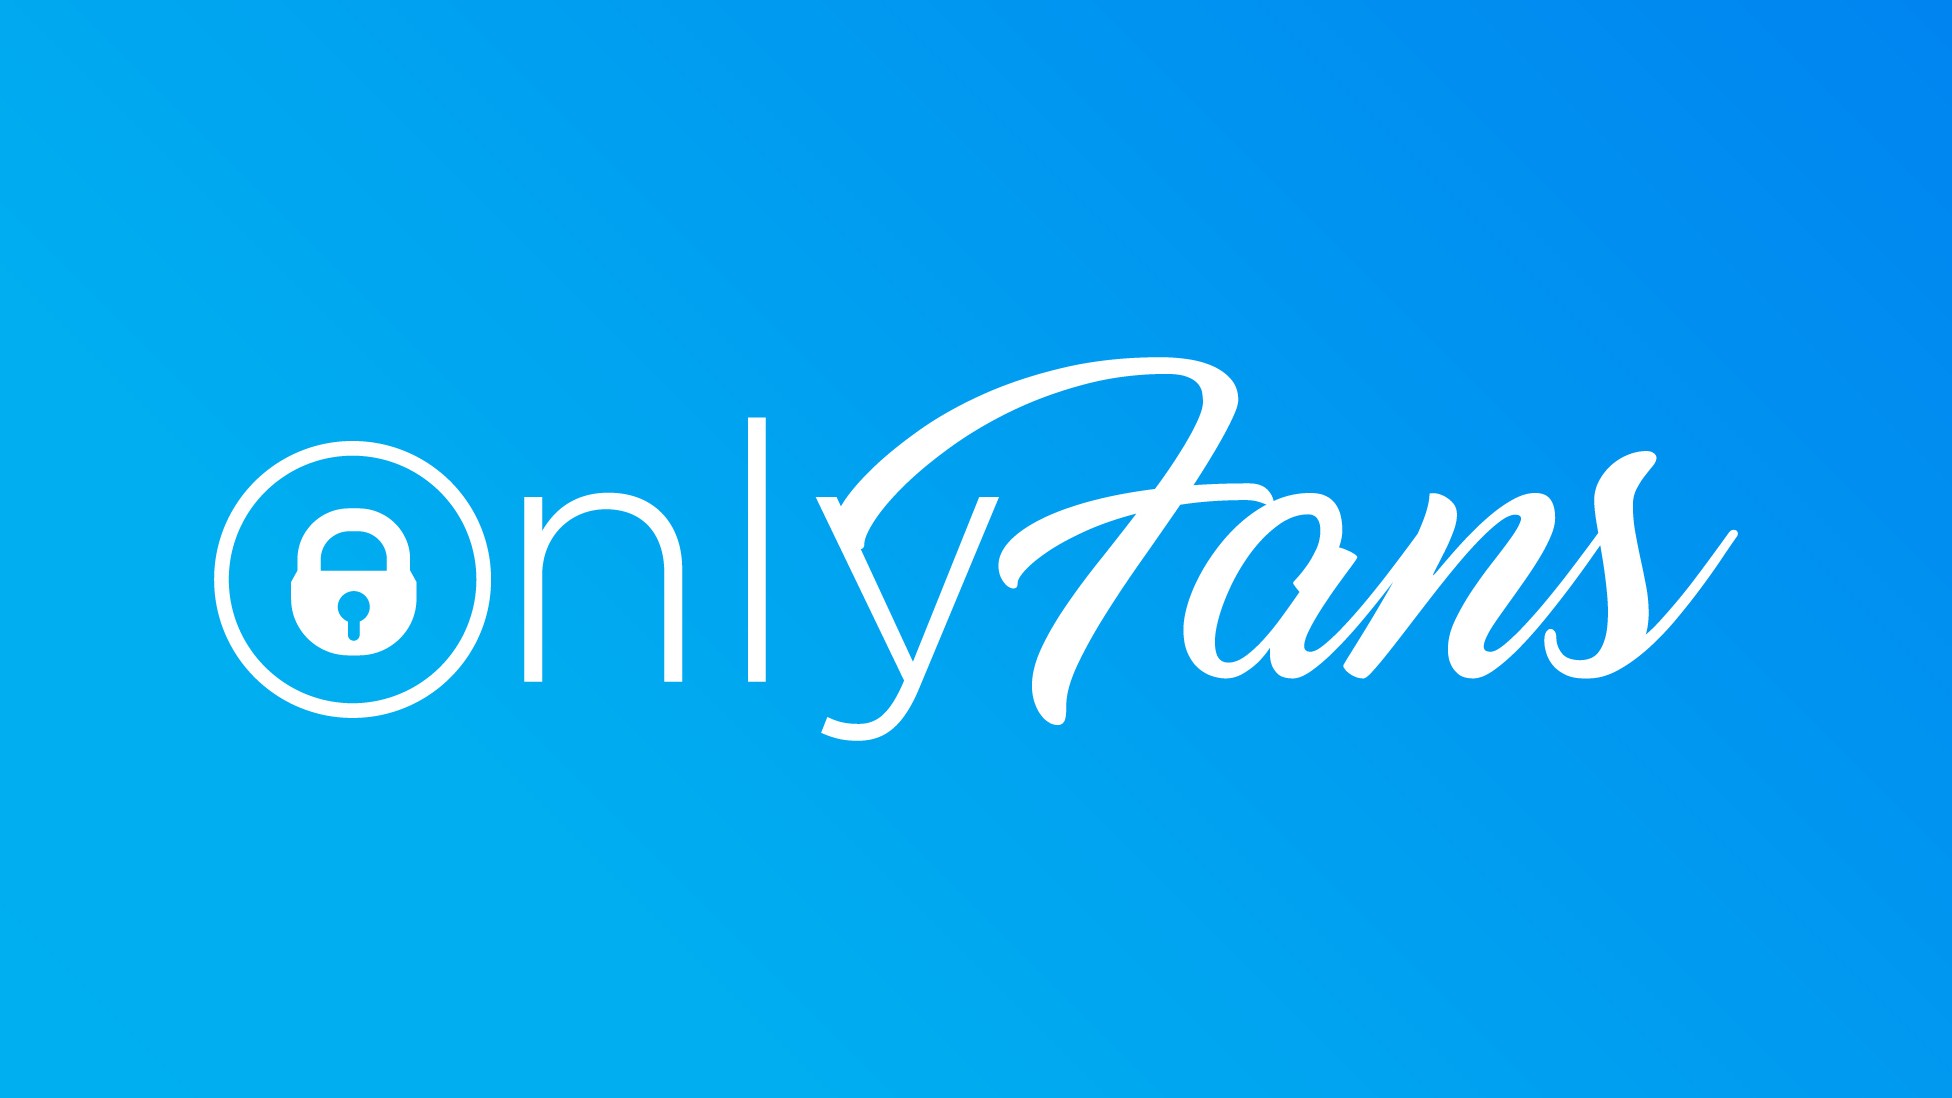 OnlyFans hadde 130 millioner brukere i 2020. Bilde: OnlyFans